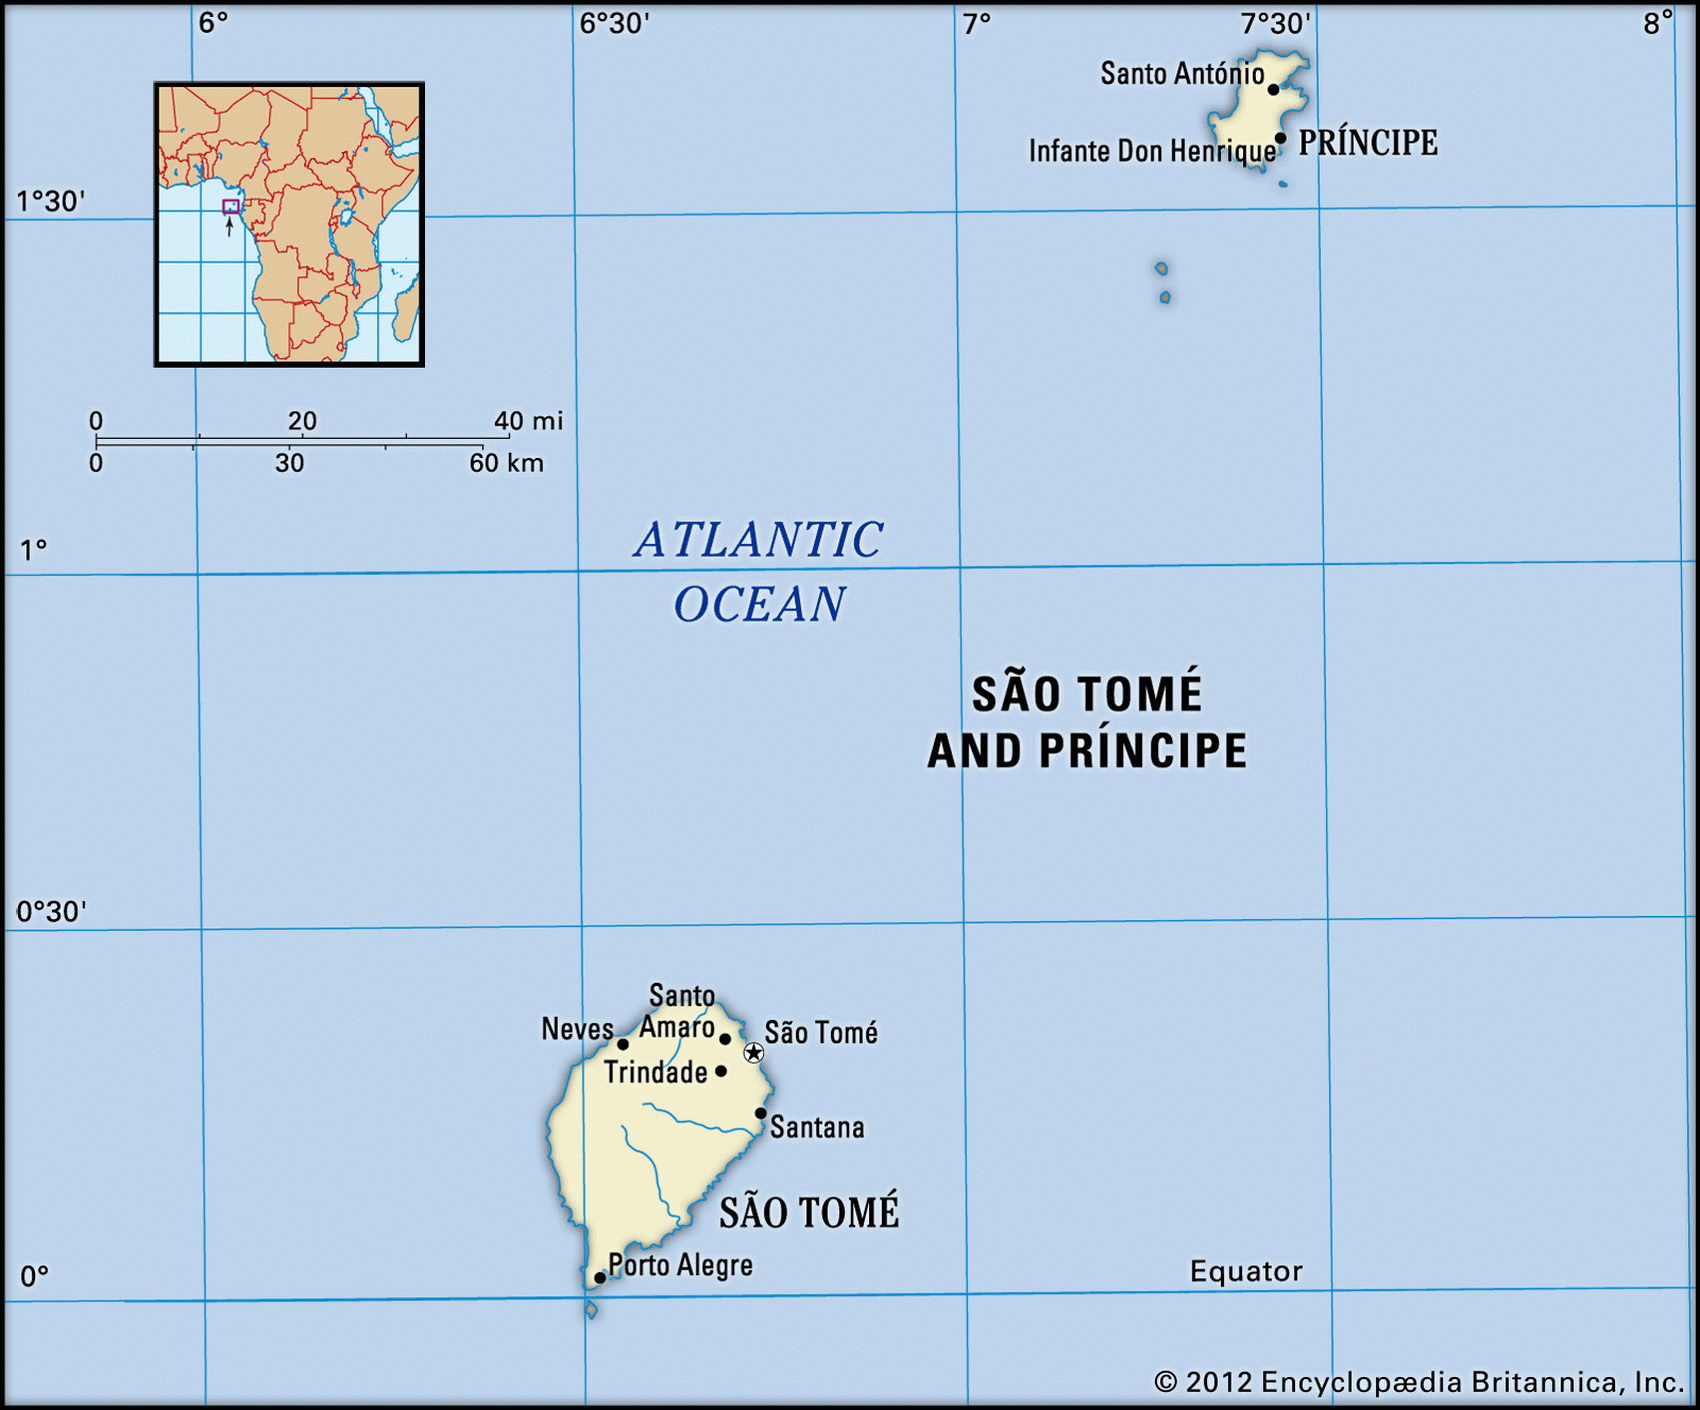 Сан Томе и Принципе на карте мира